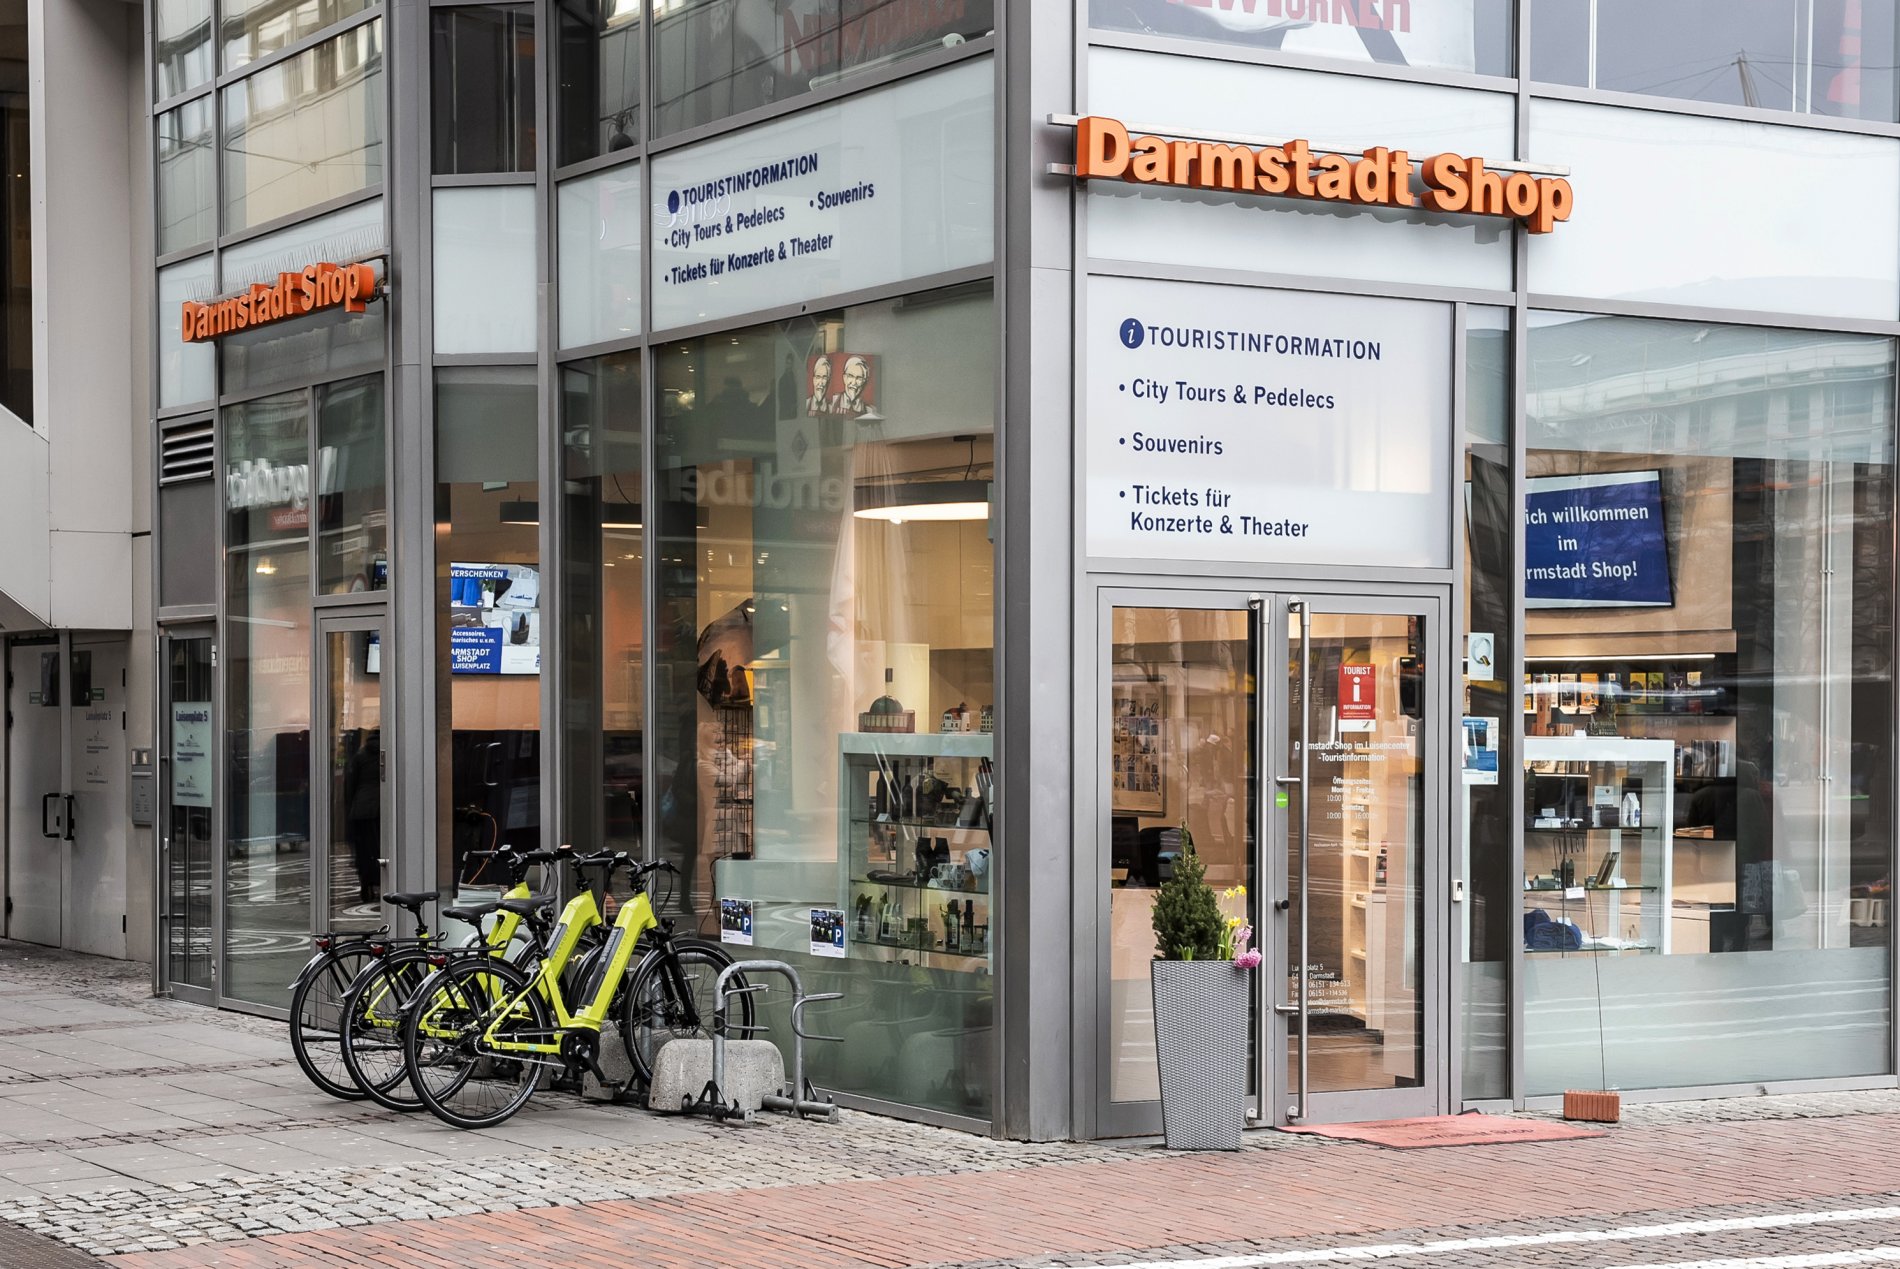 Darmstadt Shop mit großen Schaufenstern, davor vier Elektrofahrräder, im Ladeninneren verschiedene Vitrinen und Prospektständer.